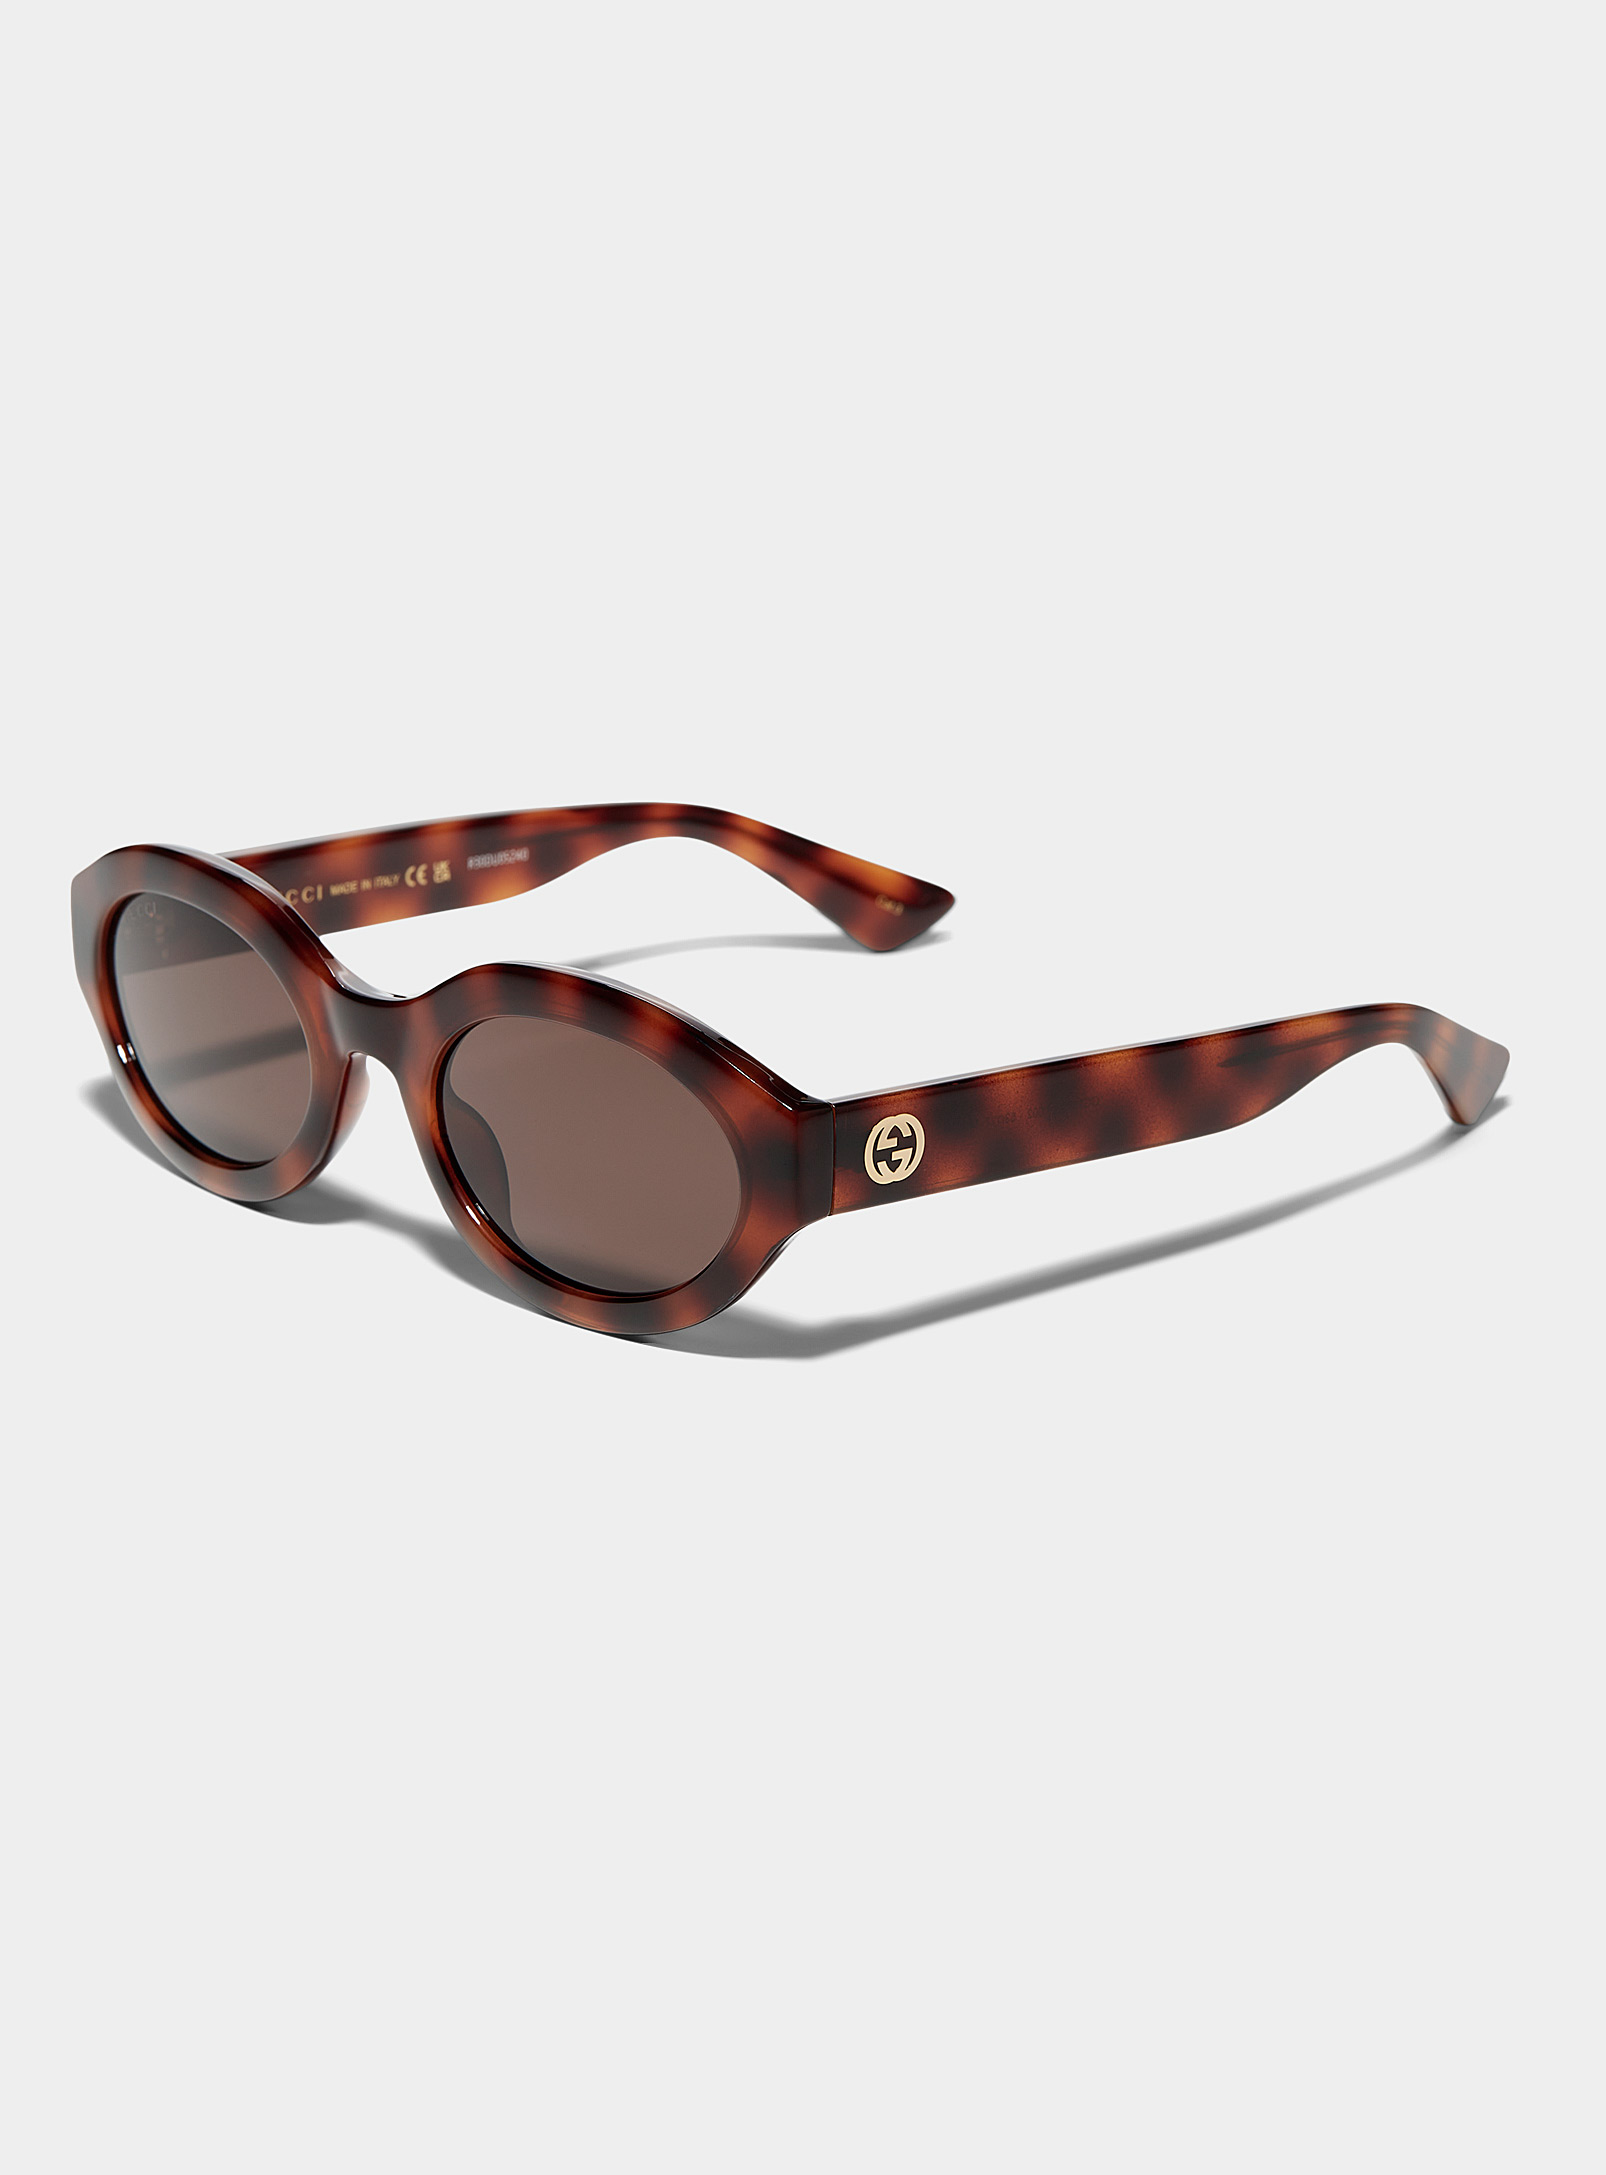 Gucci - Women's Turtle shell designer oval sunglasses